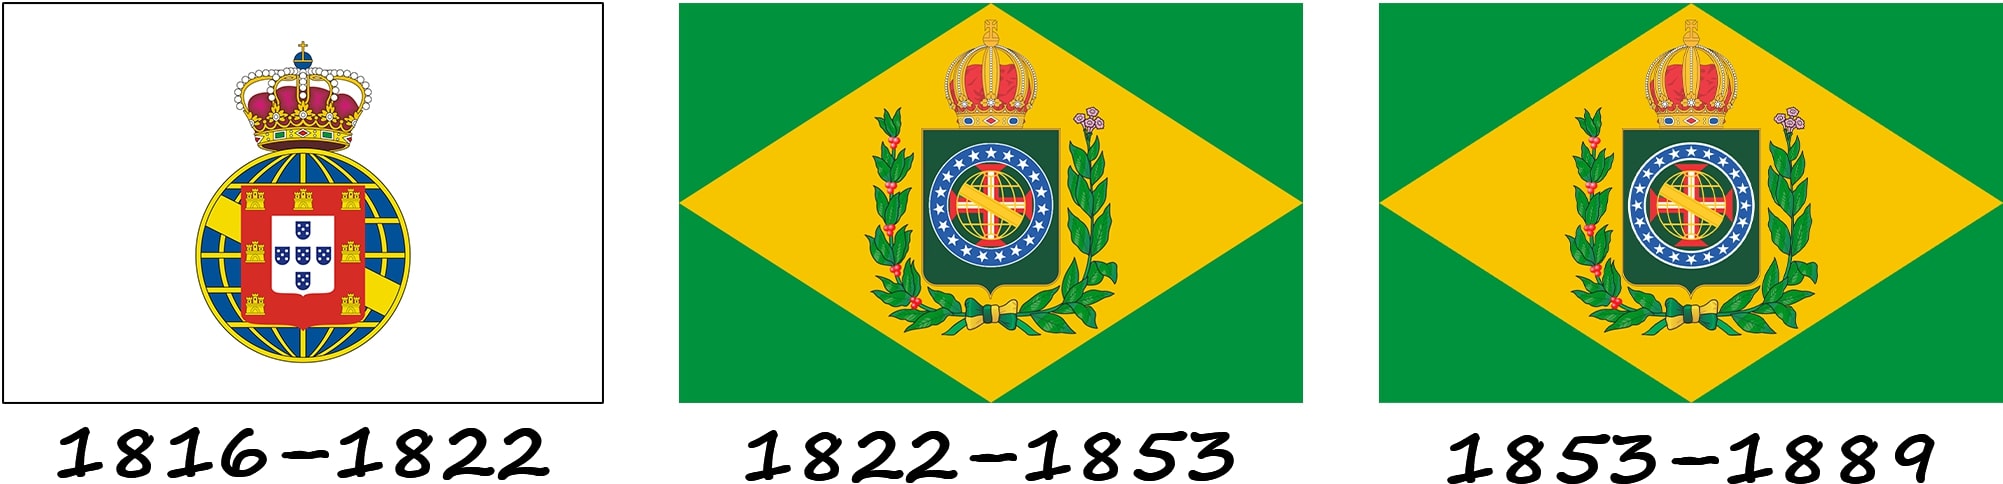 Historia de la bandera antes de la creación de la República de Brasil